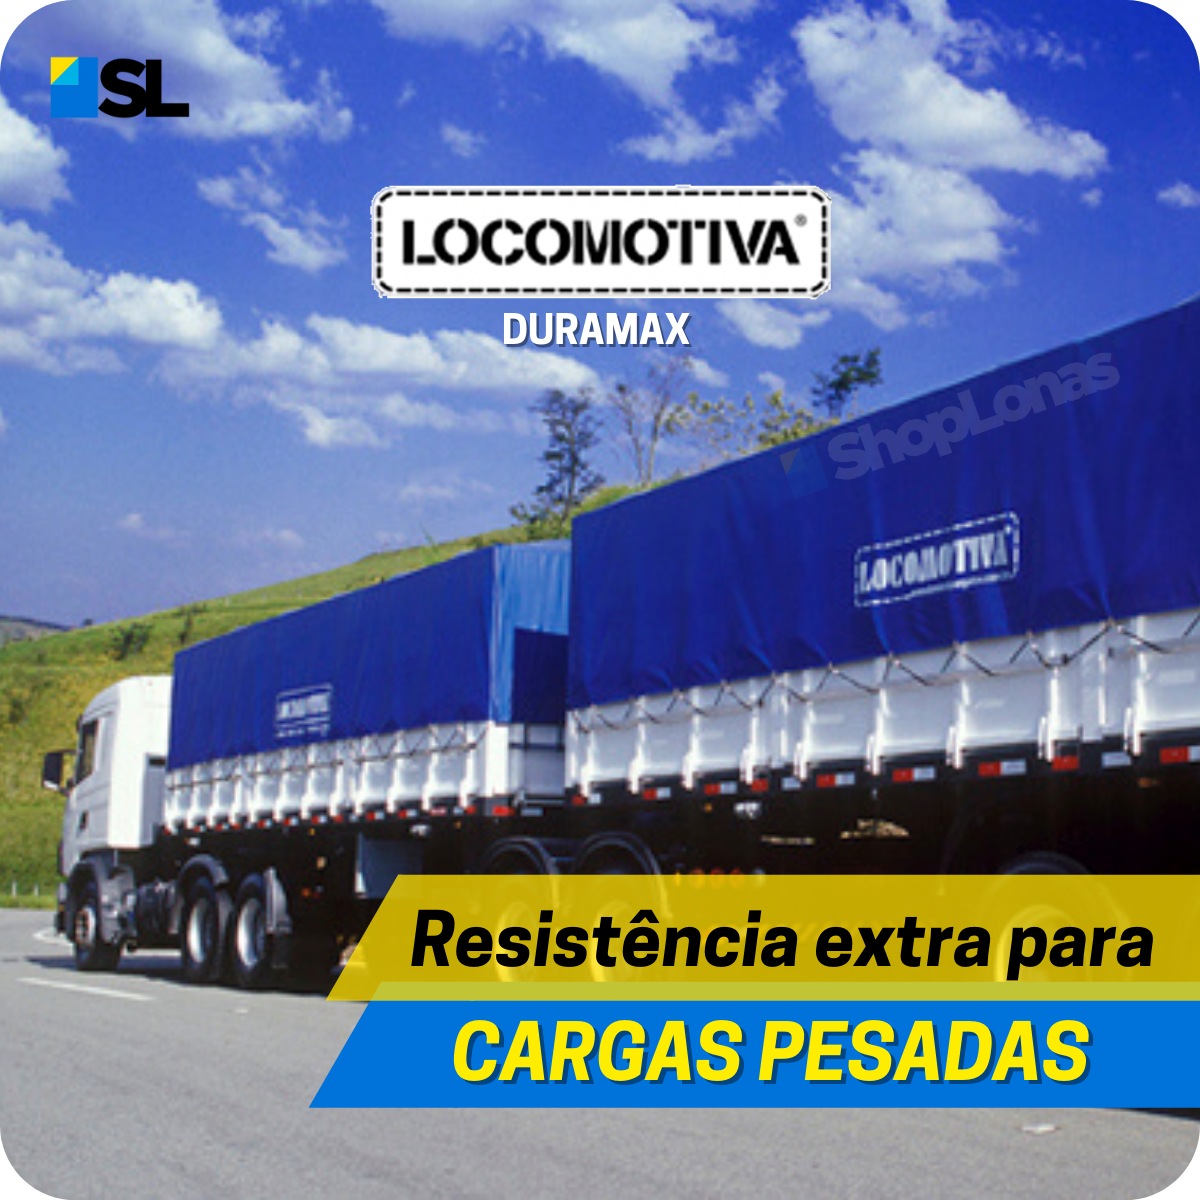 Lona Caminhão Locomotiva Azul/Preto com Argola - 3,5x2,5